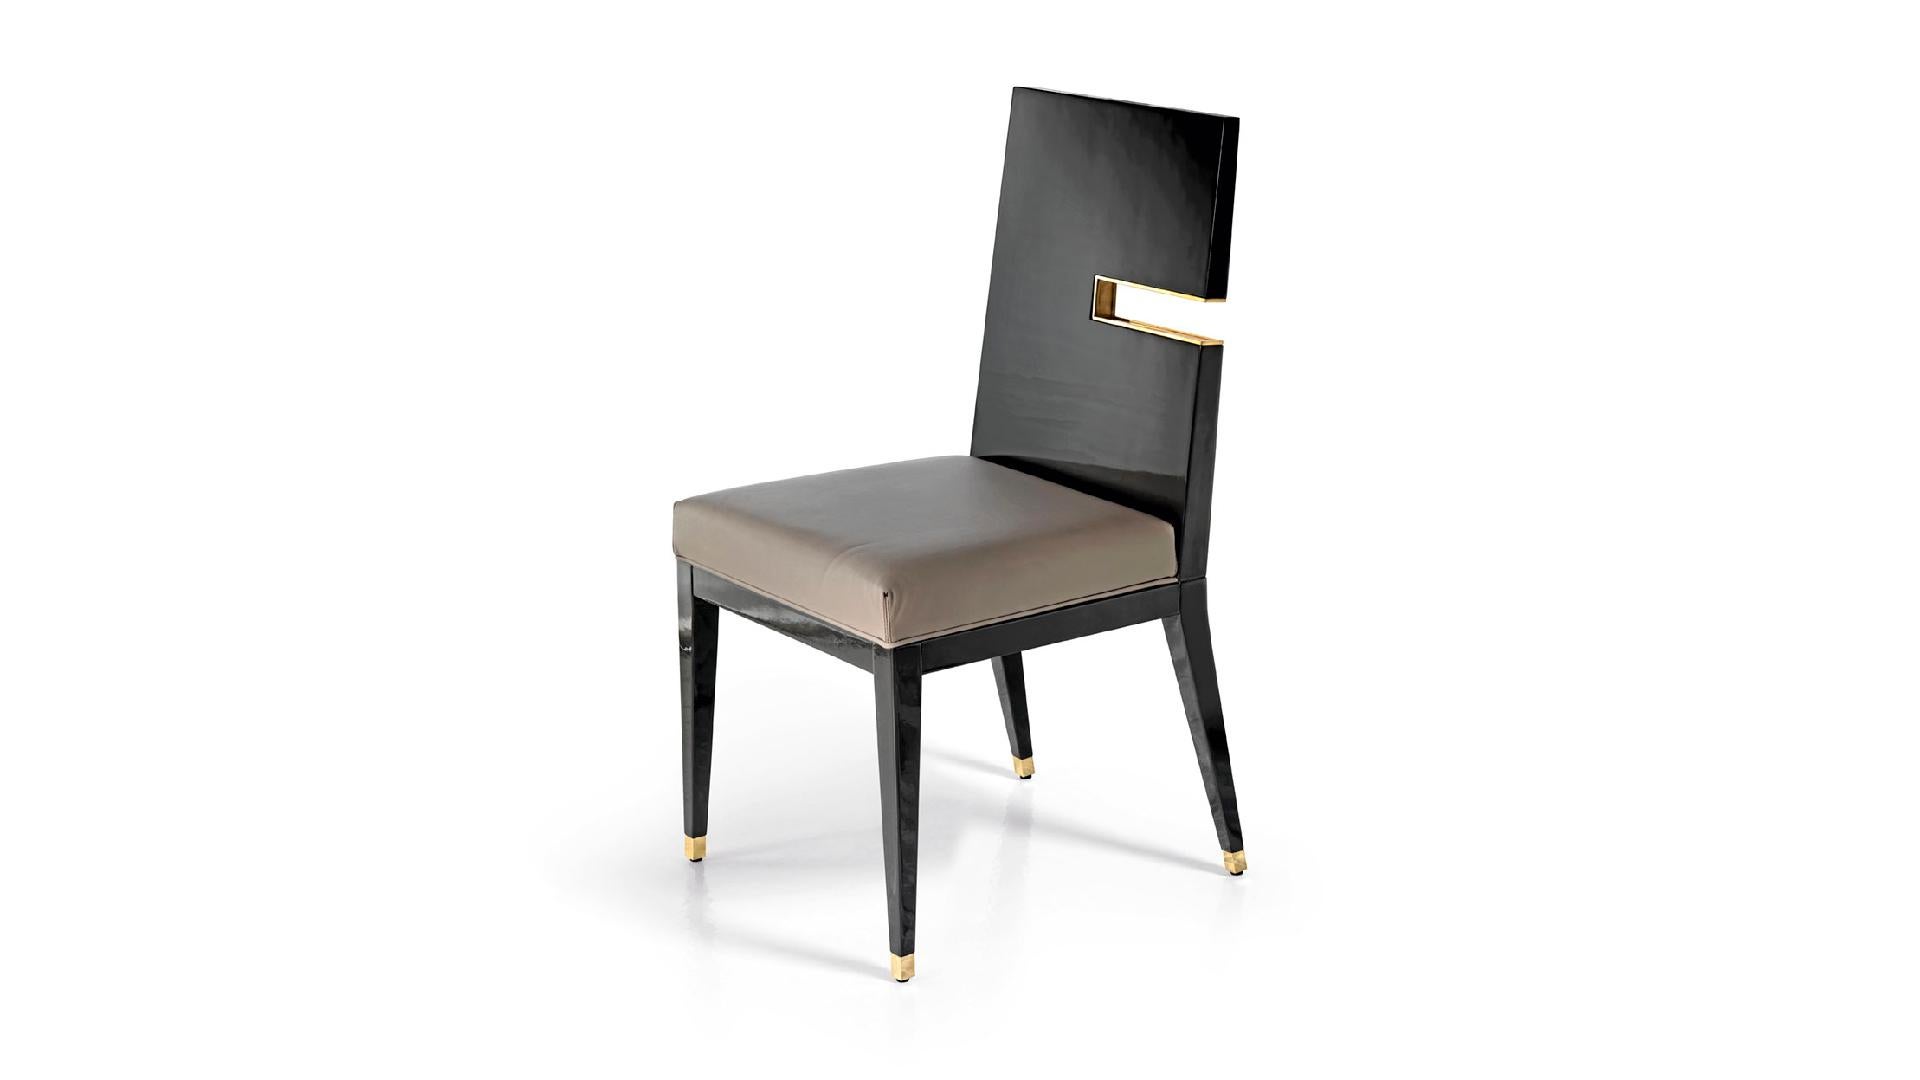 Moderne Cadre de la chaise en bois de construction massif Capuchons métalliques sur les pieds Insertion décorative dans le dossier en vente